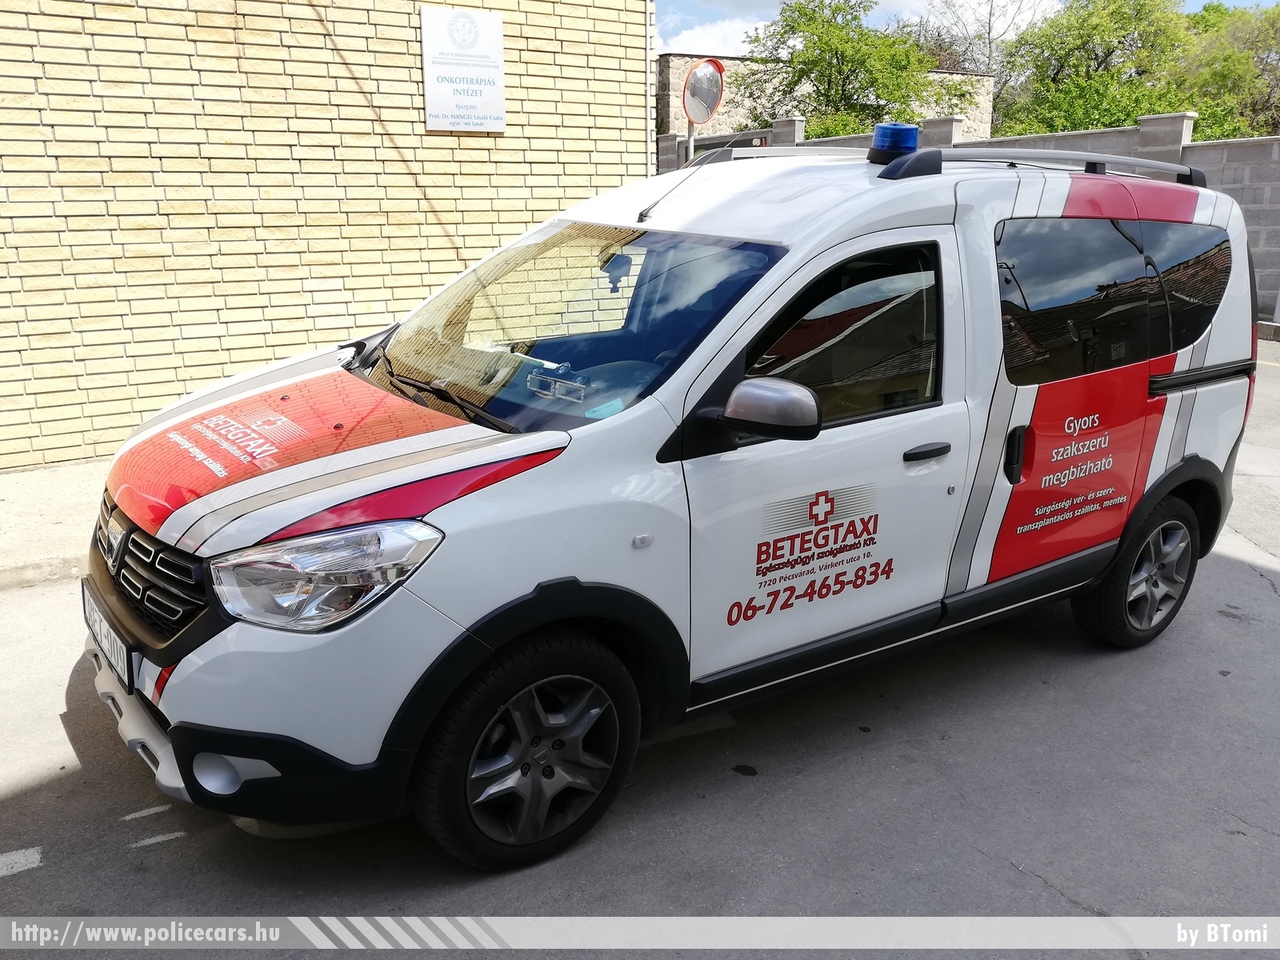 Dacia Dokker, Pécs, Betegtaxi Szolgáltató Kft., fotó: BTomi
Keywords: magyar Magyarország mentő mentőautó Hungary hungarian ambulance RET-909